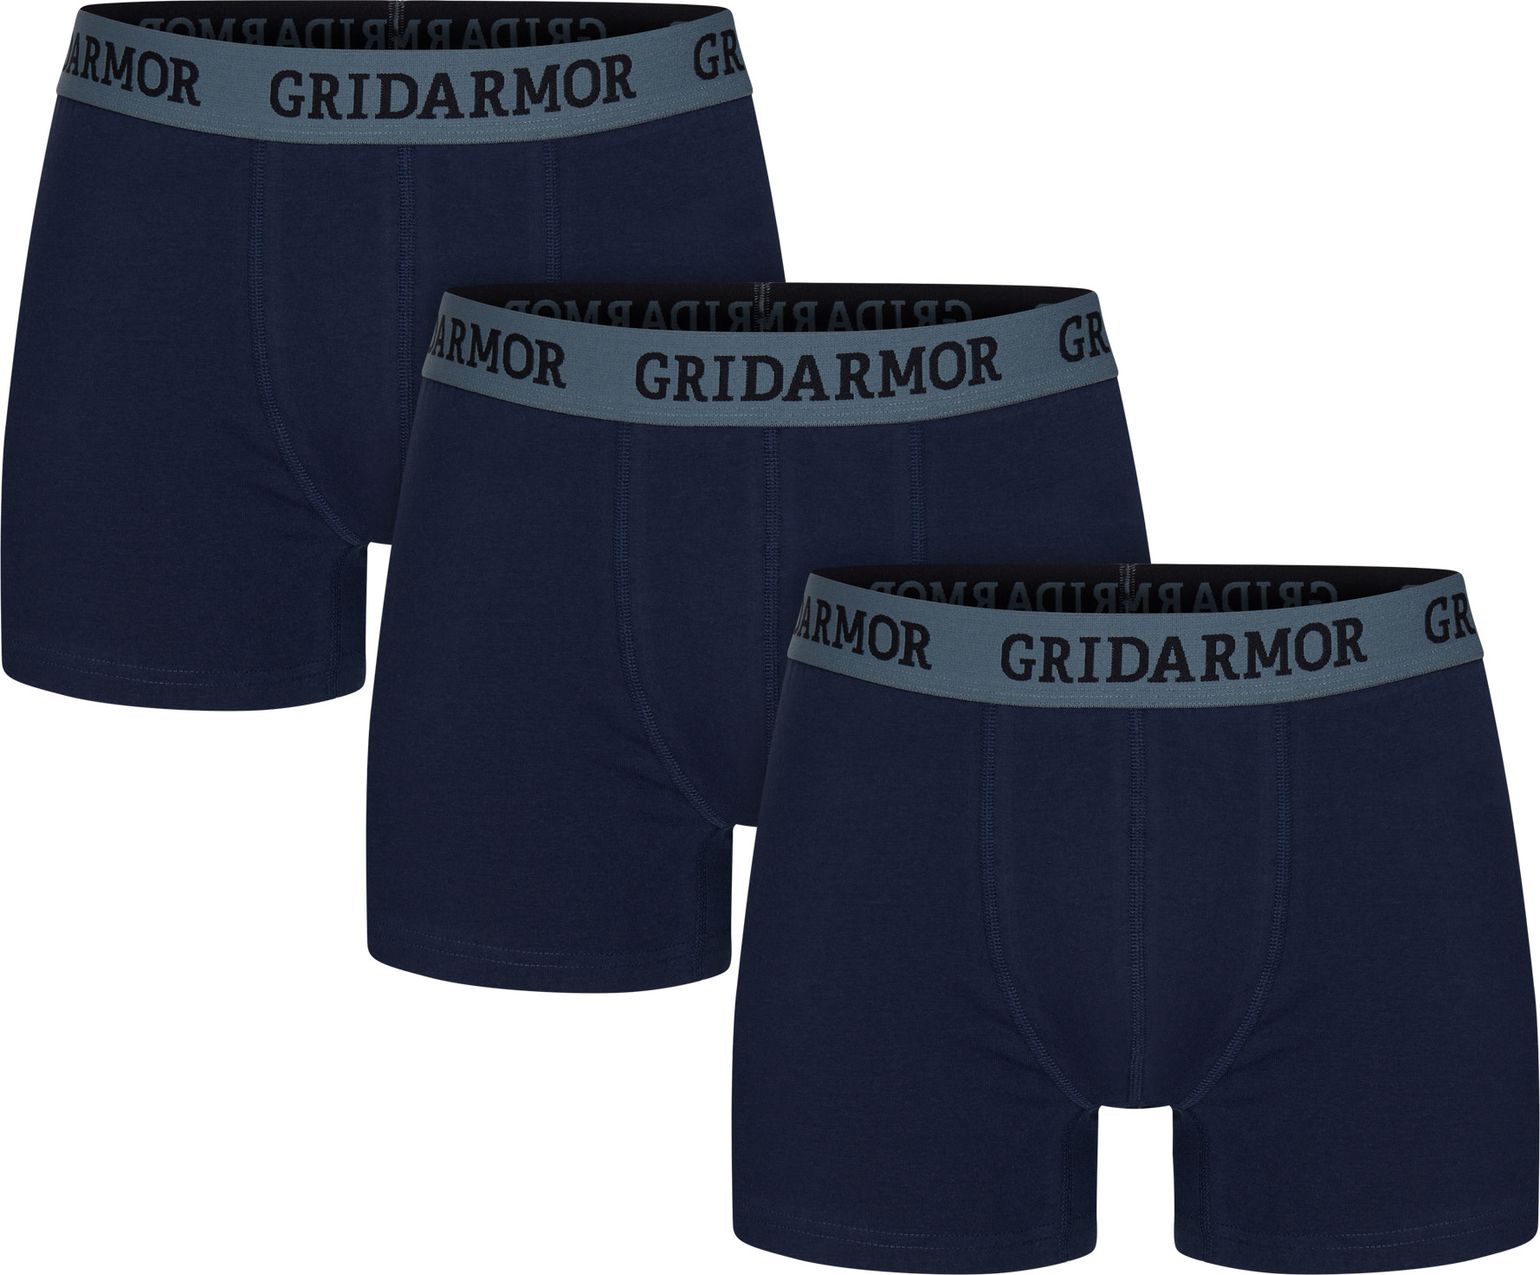 Gridarmor Men's Steine 3p Cotton Boxers 2.0 Navy Blazer